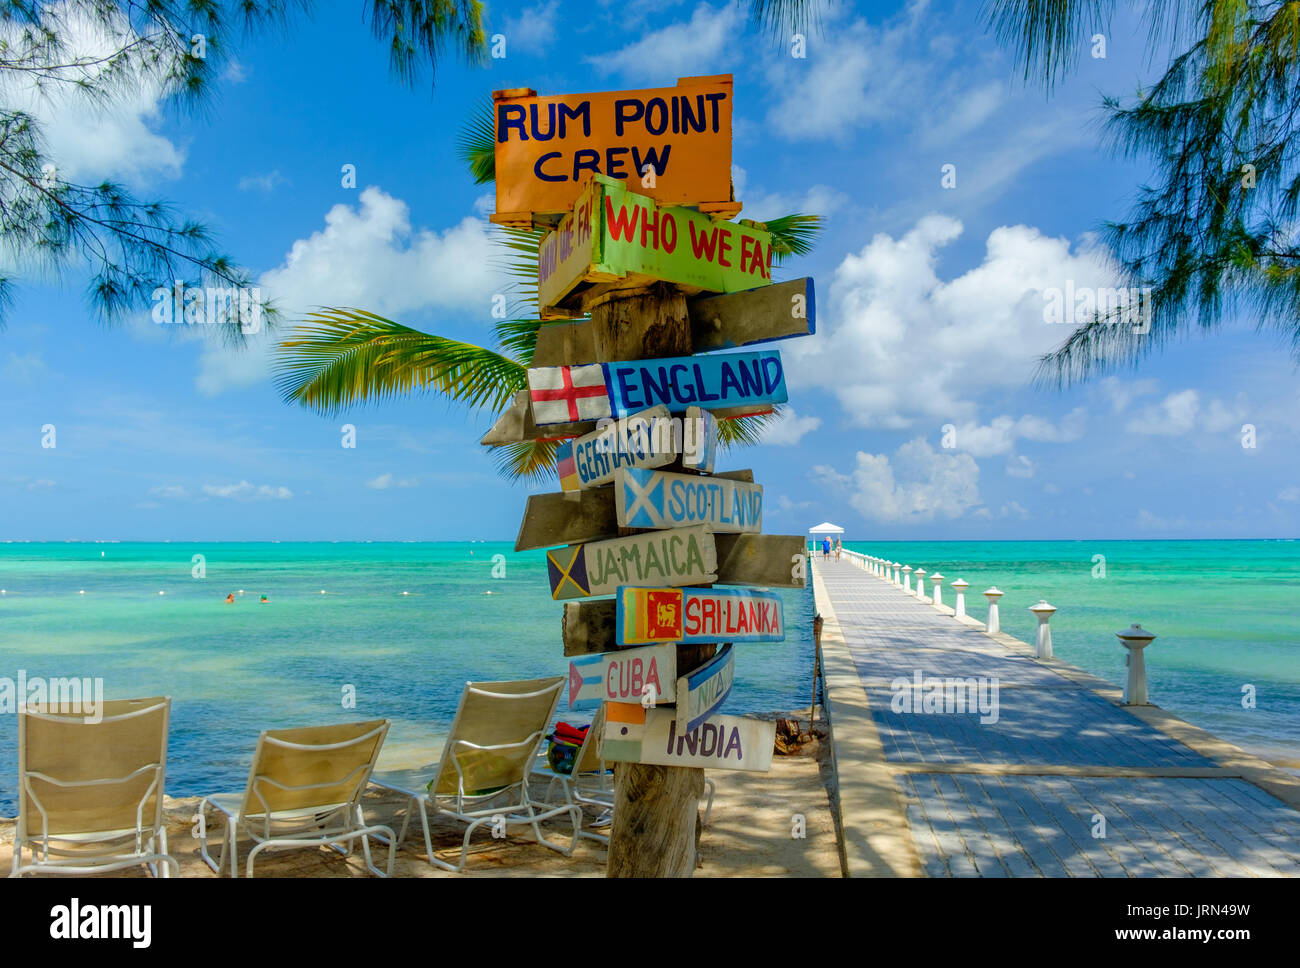 Panneau par une jetée et la mer des Caraïbes à Rum point, Grand Cayman, îles Caïman Banque D'Images